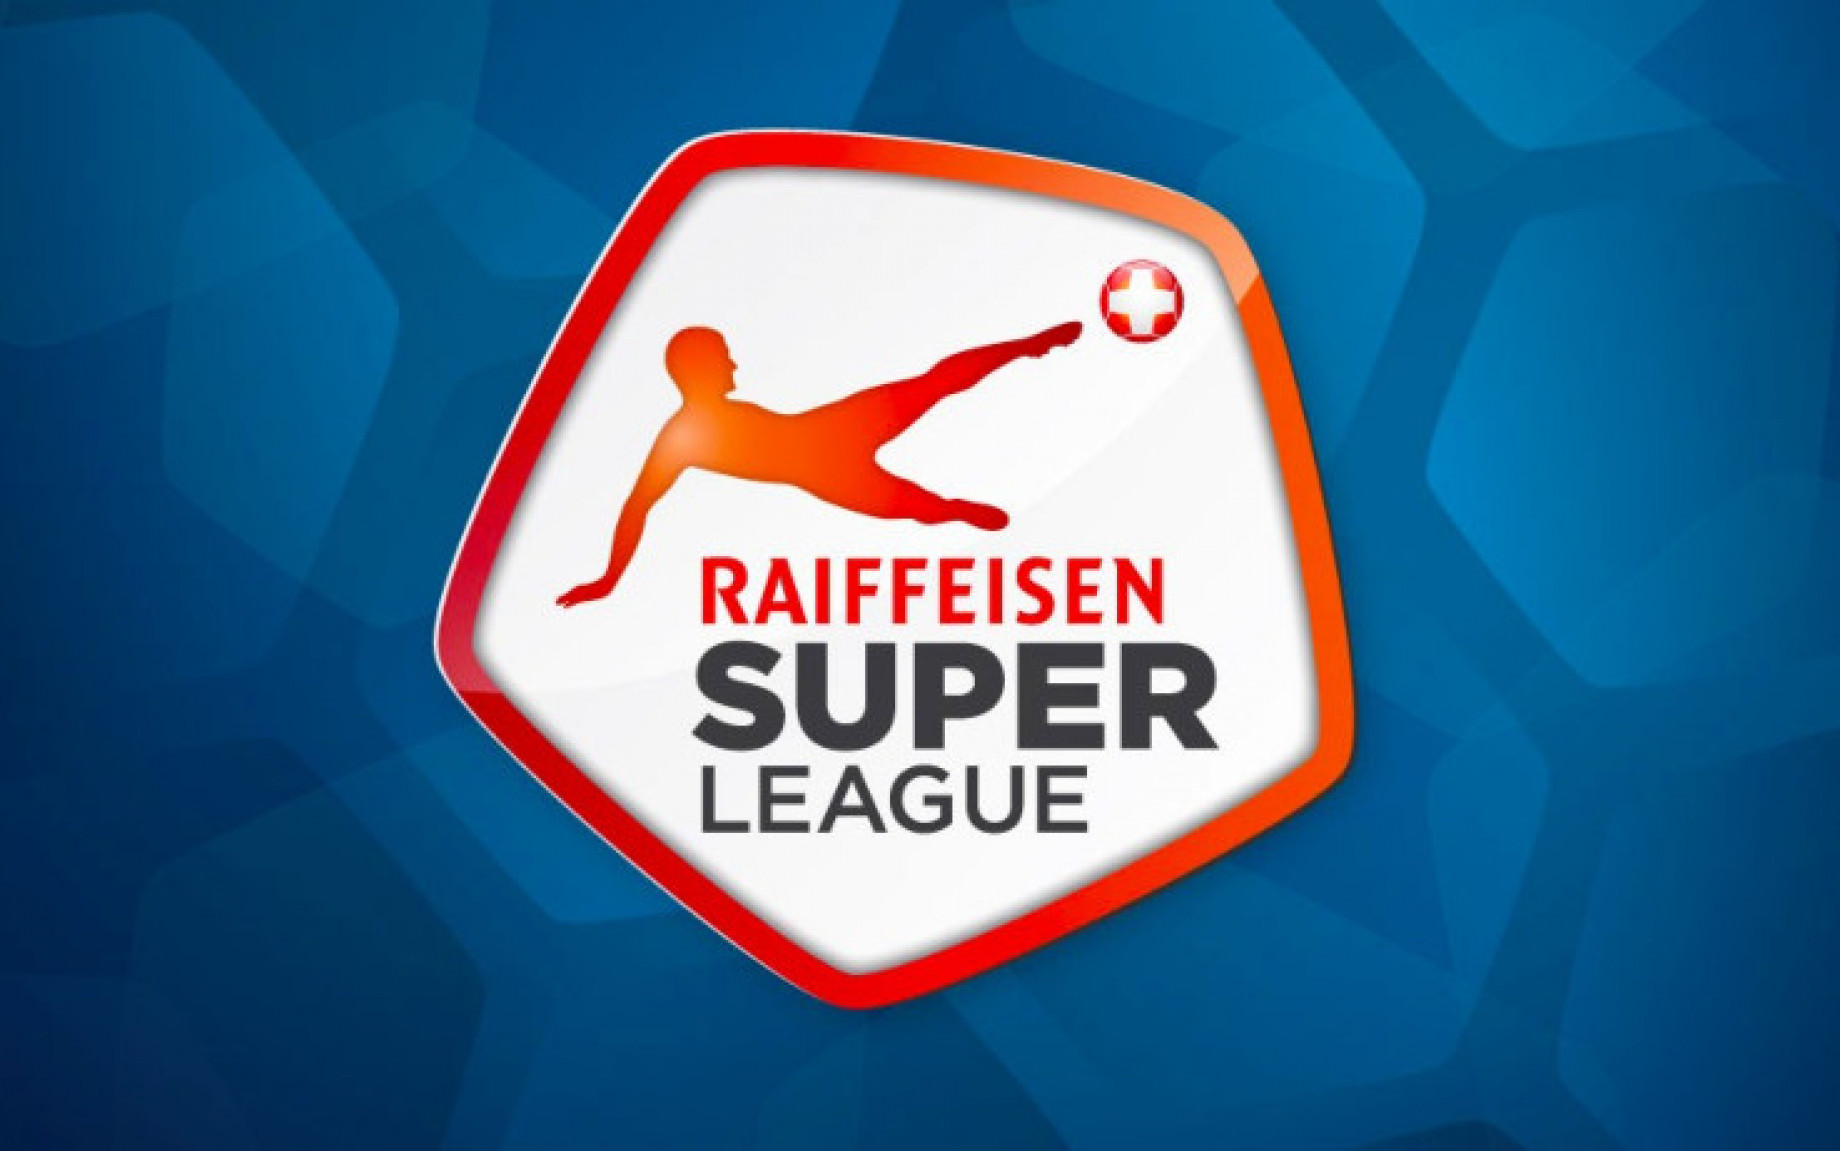 Svizzera campionato Raiffeisen Super League logo.jpg